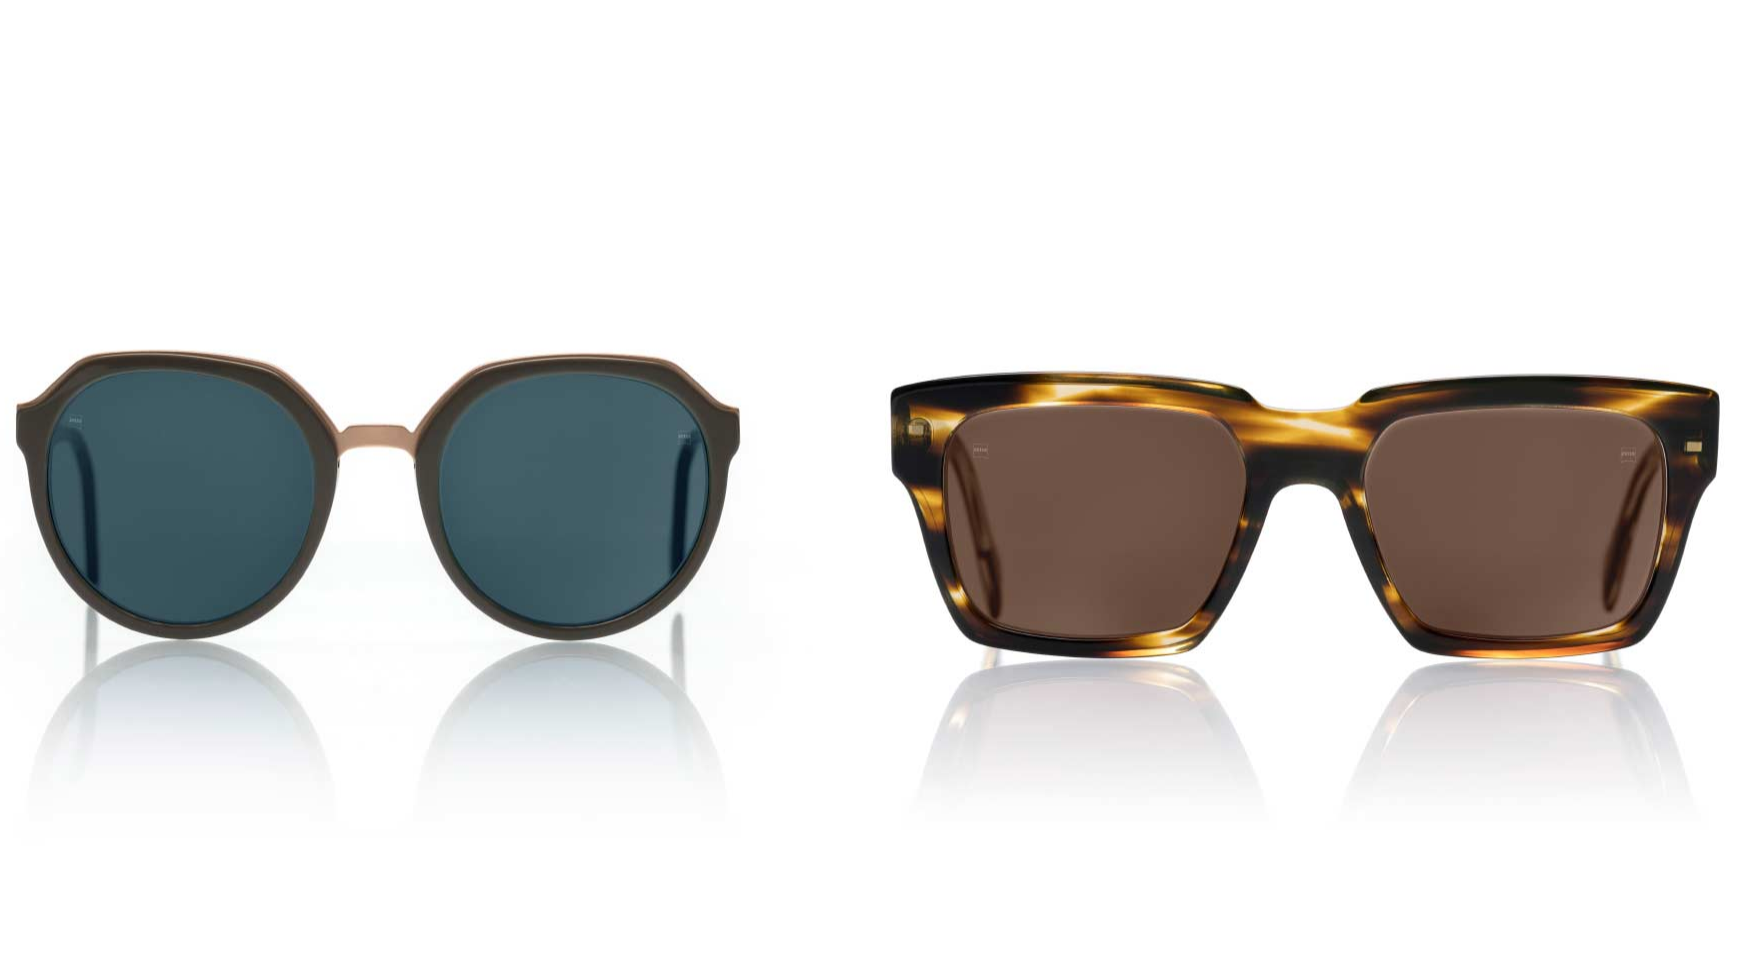 ZEISS PhotoFusion X, están disponibles en colores actuales y naturales - igual que las lentes de las gafas de sol habituales